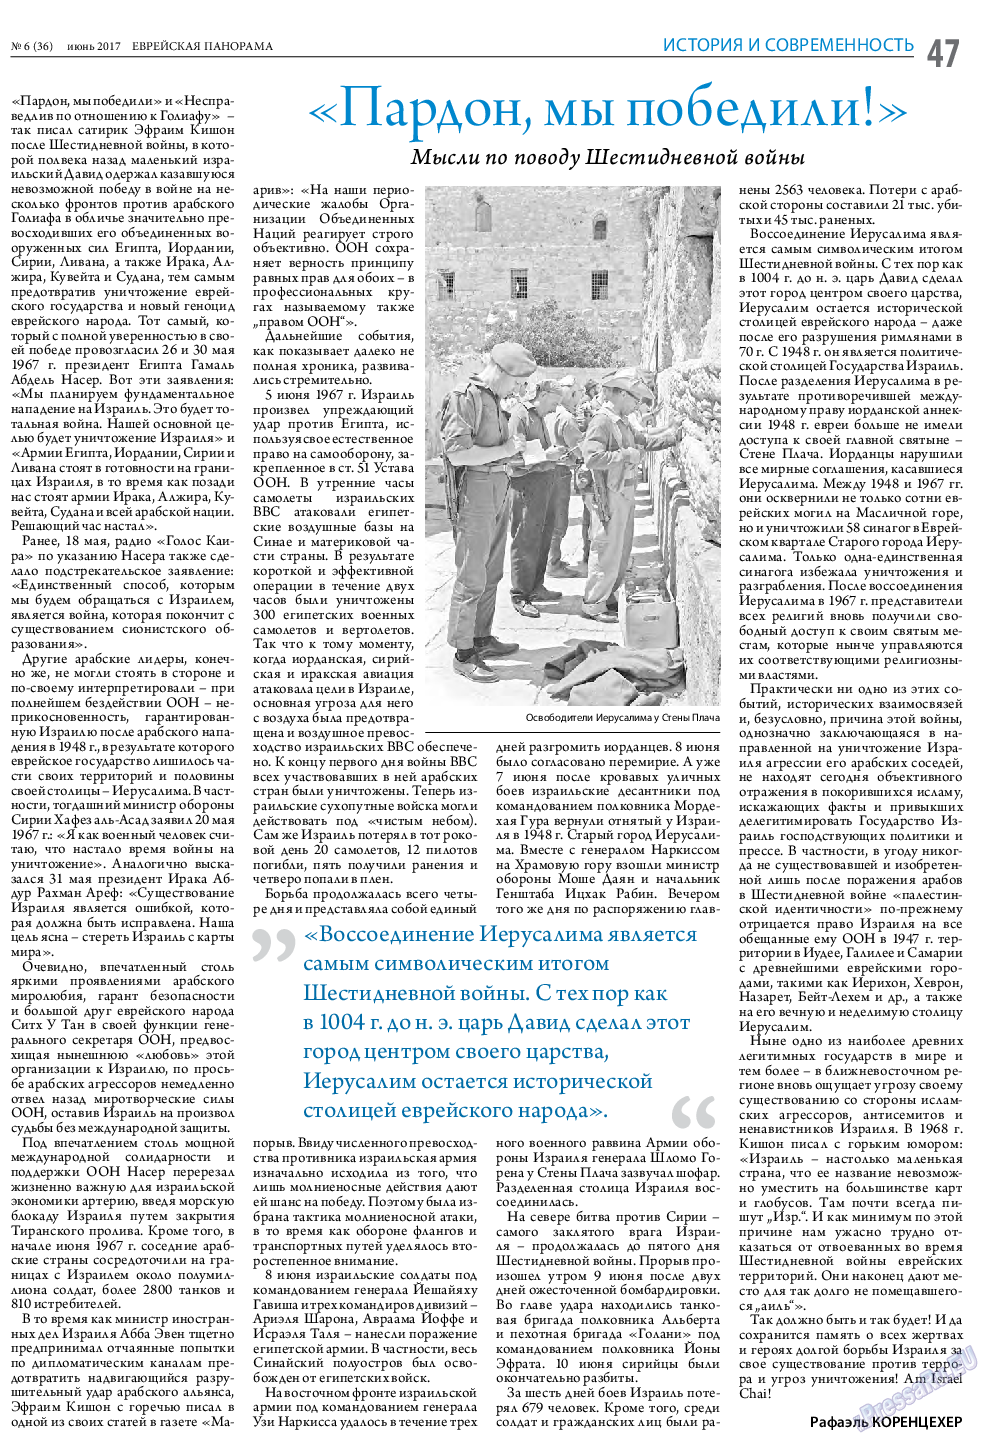 Еврейская панорама (газета). 2017 год, номер 6, стр. 47